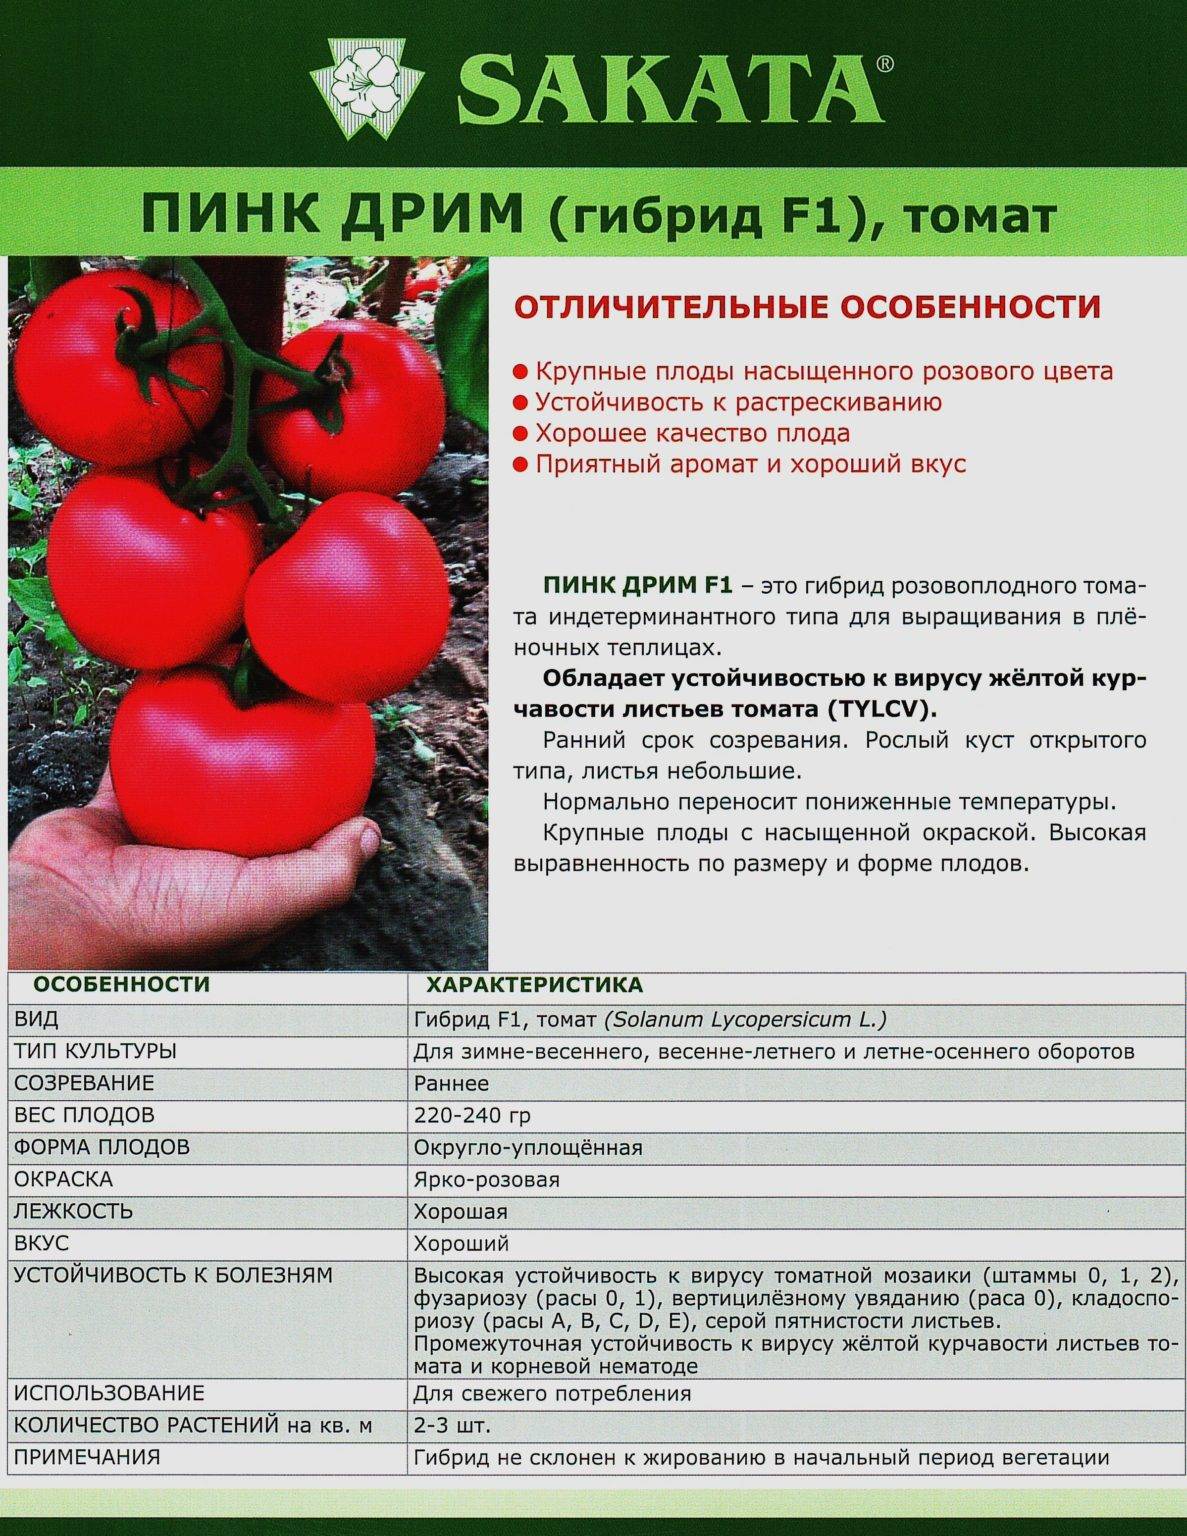 Описание и характеристики сорта томата пинк гел - все о фермерстве, растениях и урожае